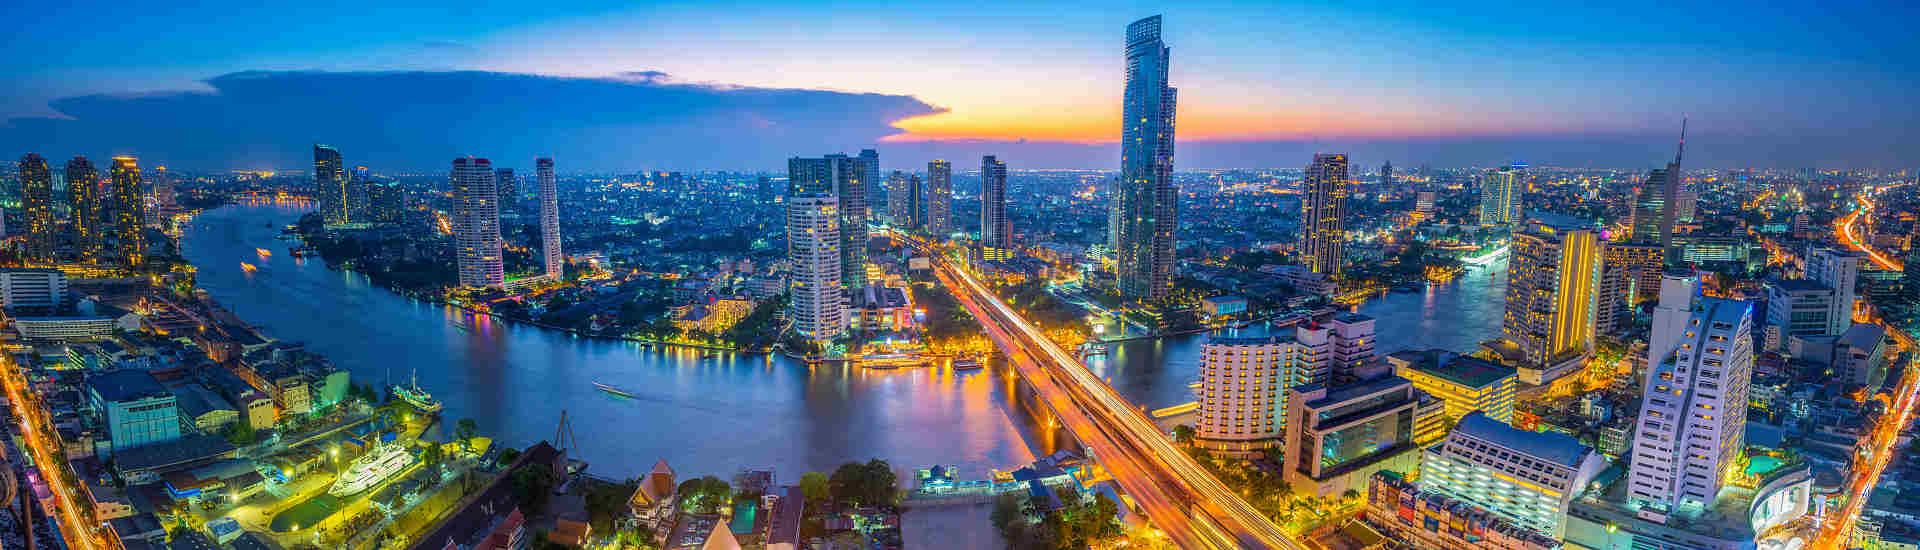 Bild einer faszinierenden Skyline von Bangkok bei Nacht für Ihre Kombireise nach Bangkok